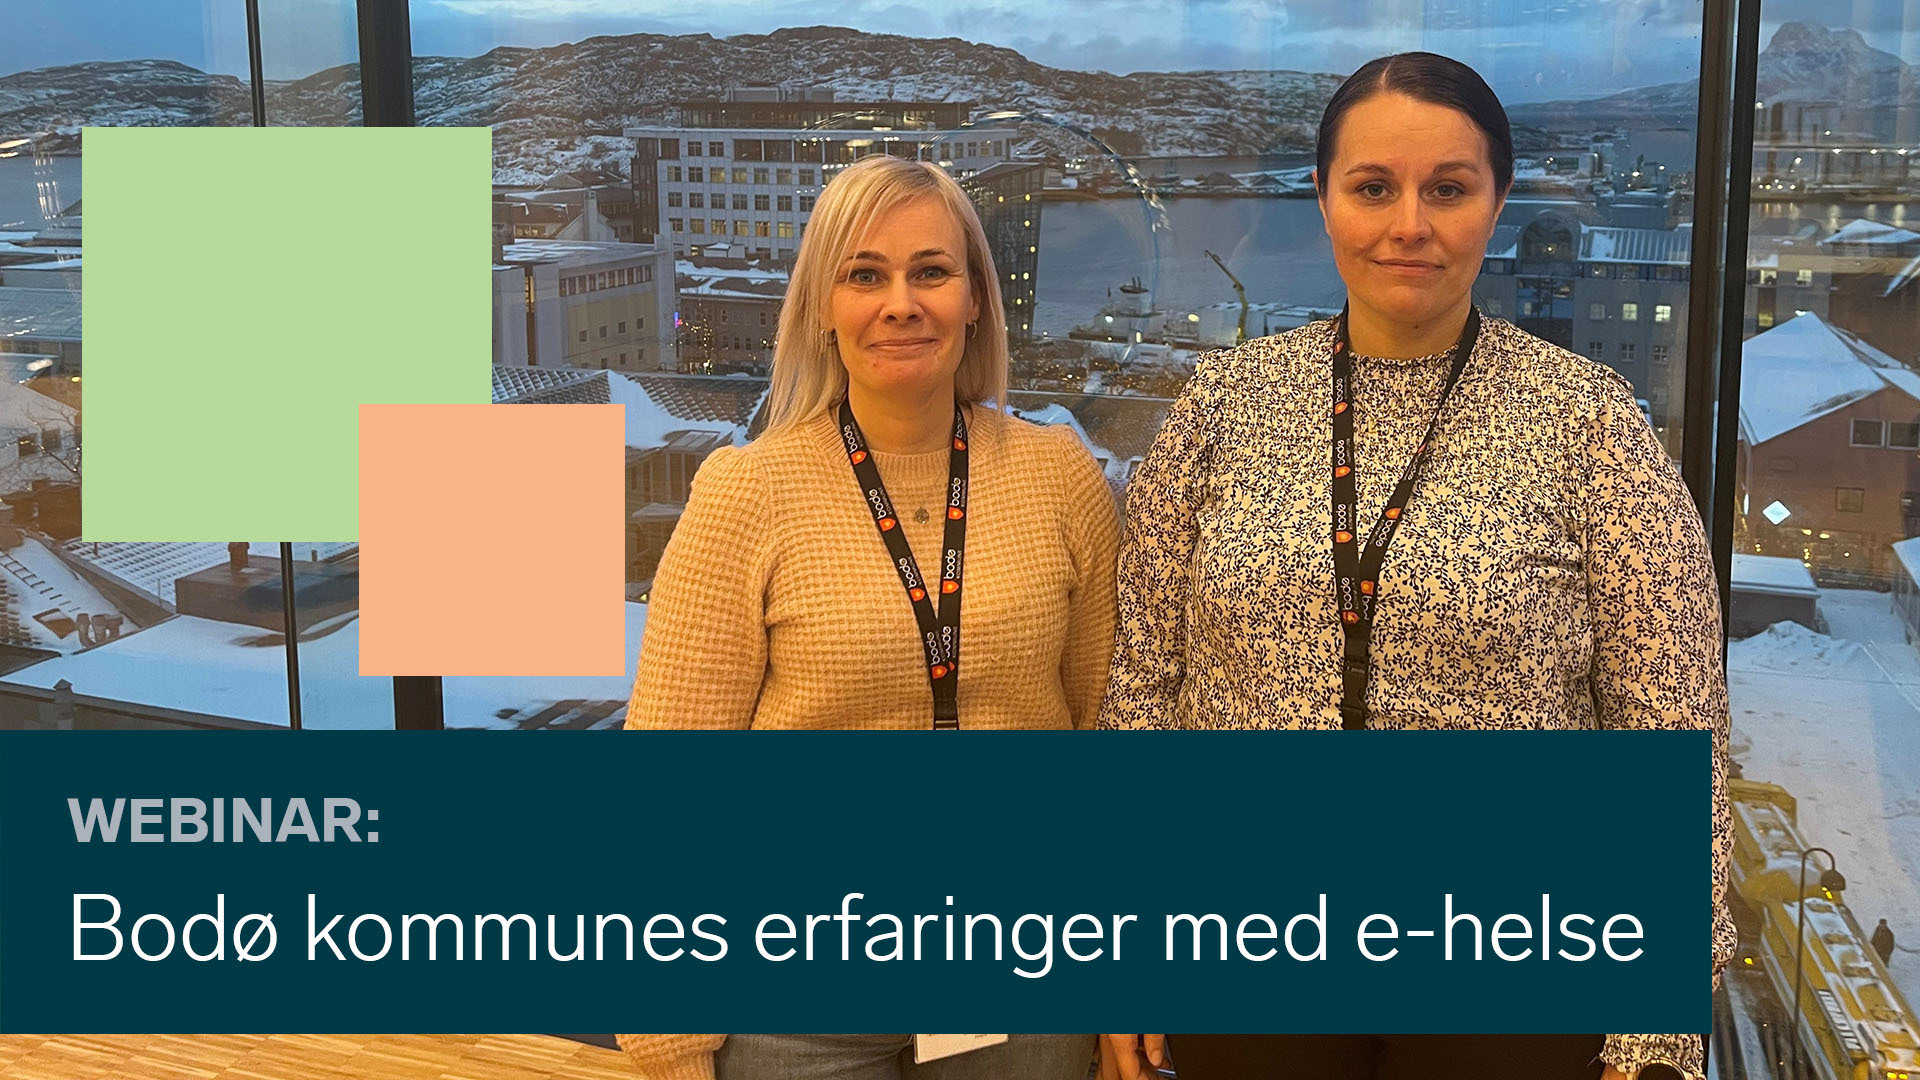 Anette Skogstad og Vibeke Tellmann deler erfaringer fra Bodø kommune angående velferdsteknologi og e-helse.